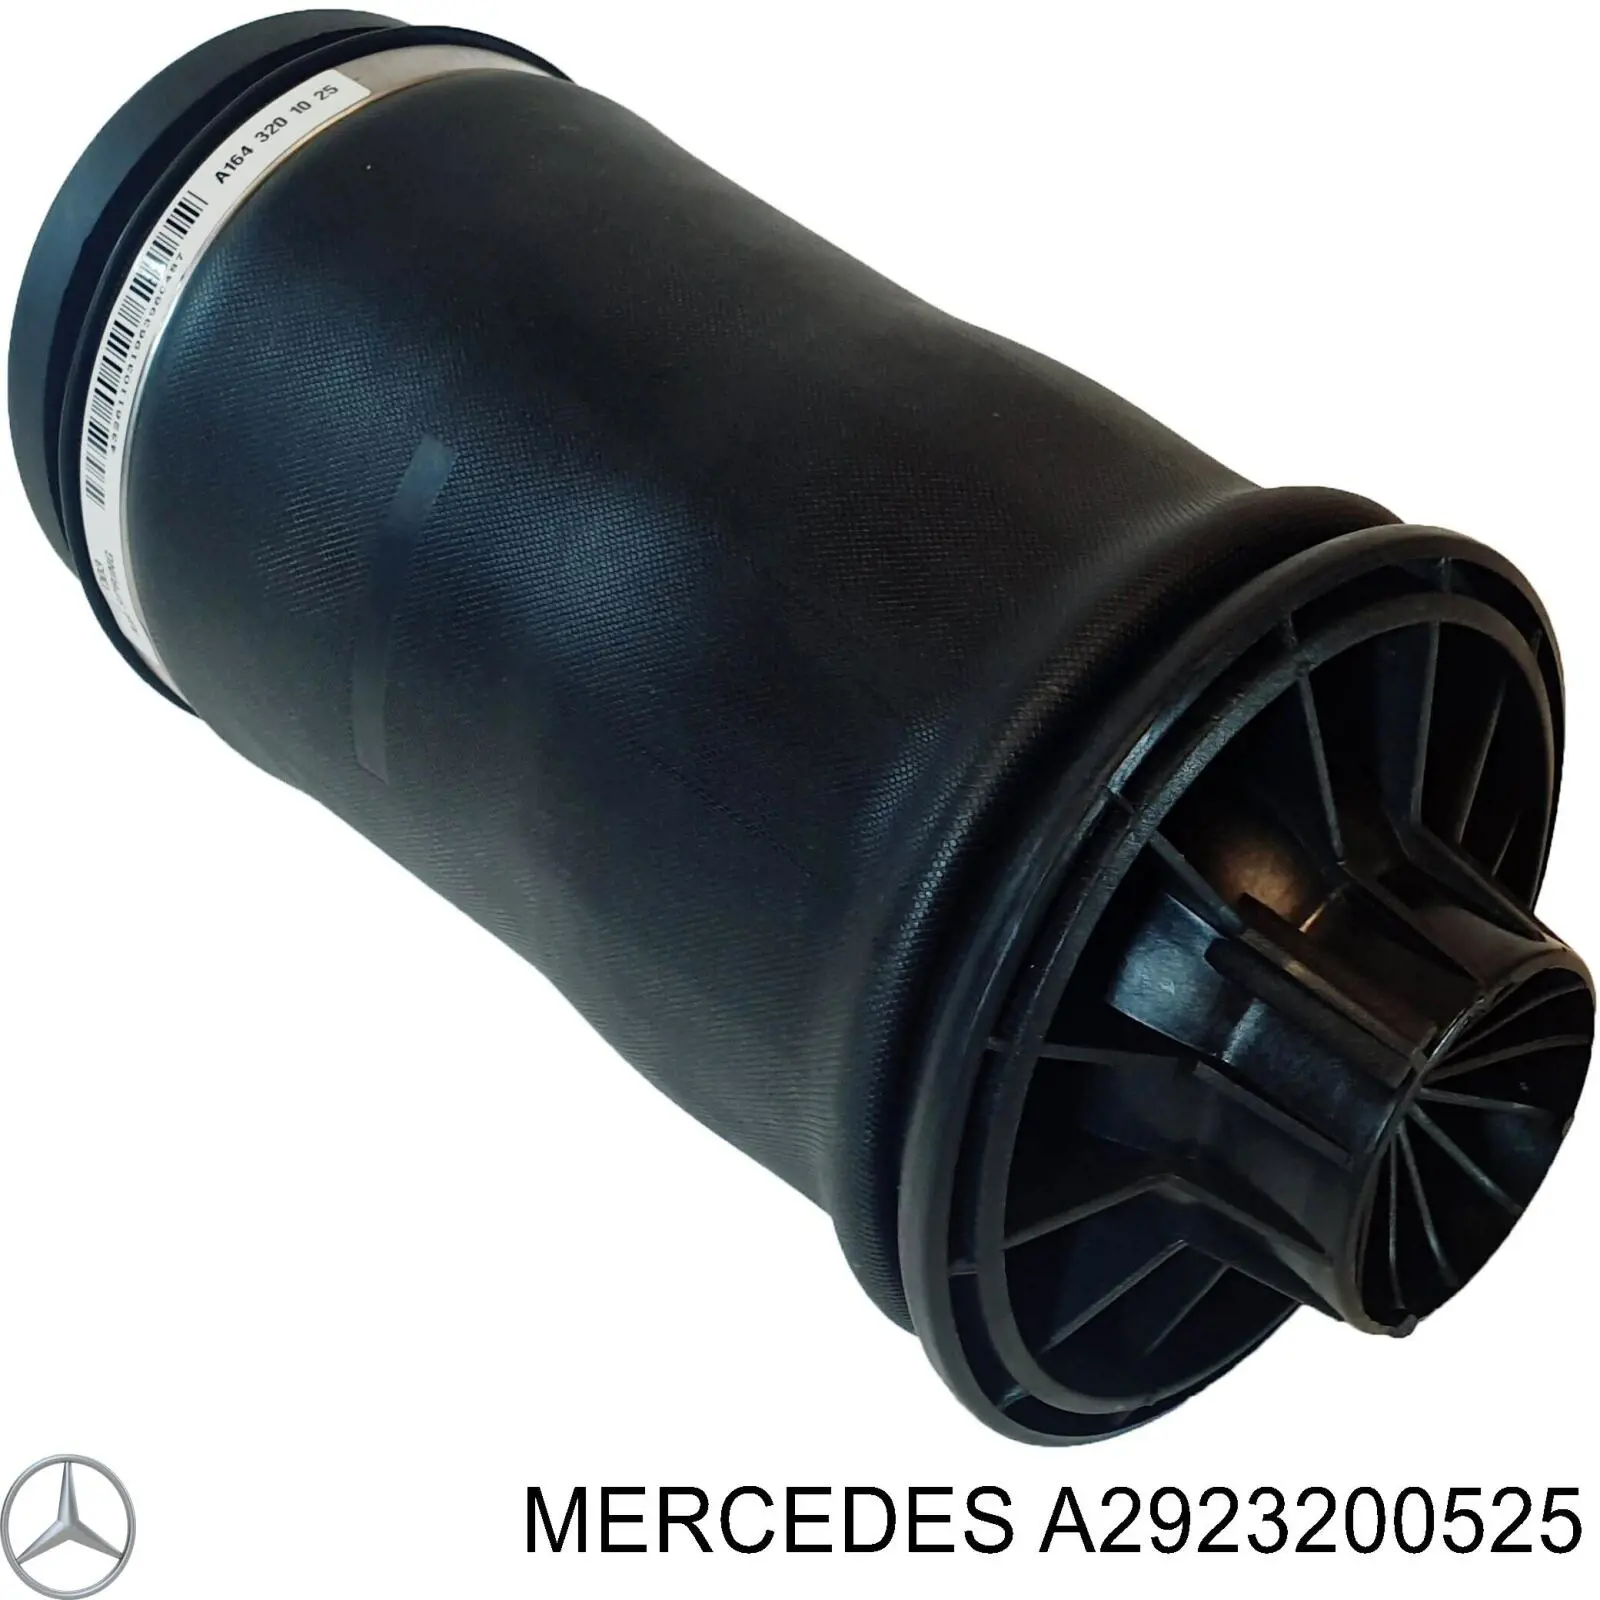 A2923200525 Mercedes muelle neumático, suspensión, eje trasero